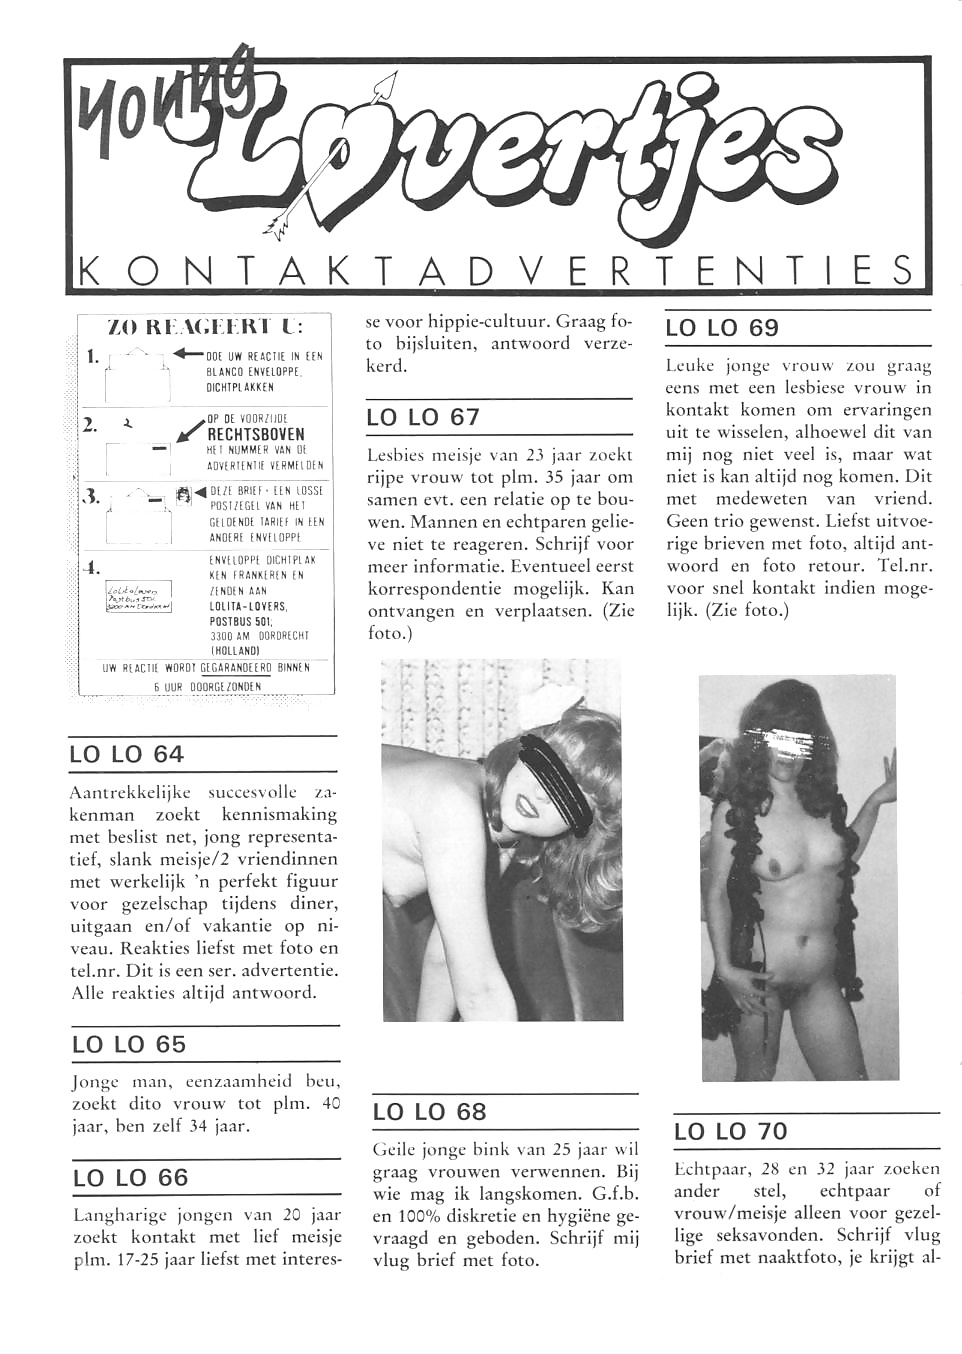 Vintage magazine - TUK Special Nr. 12 - LL Nr. 3 #40821379